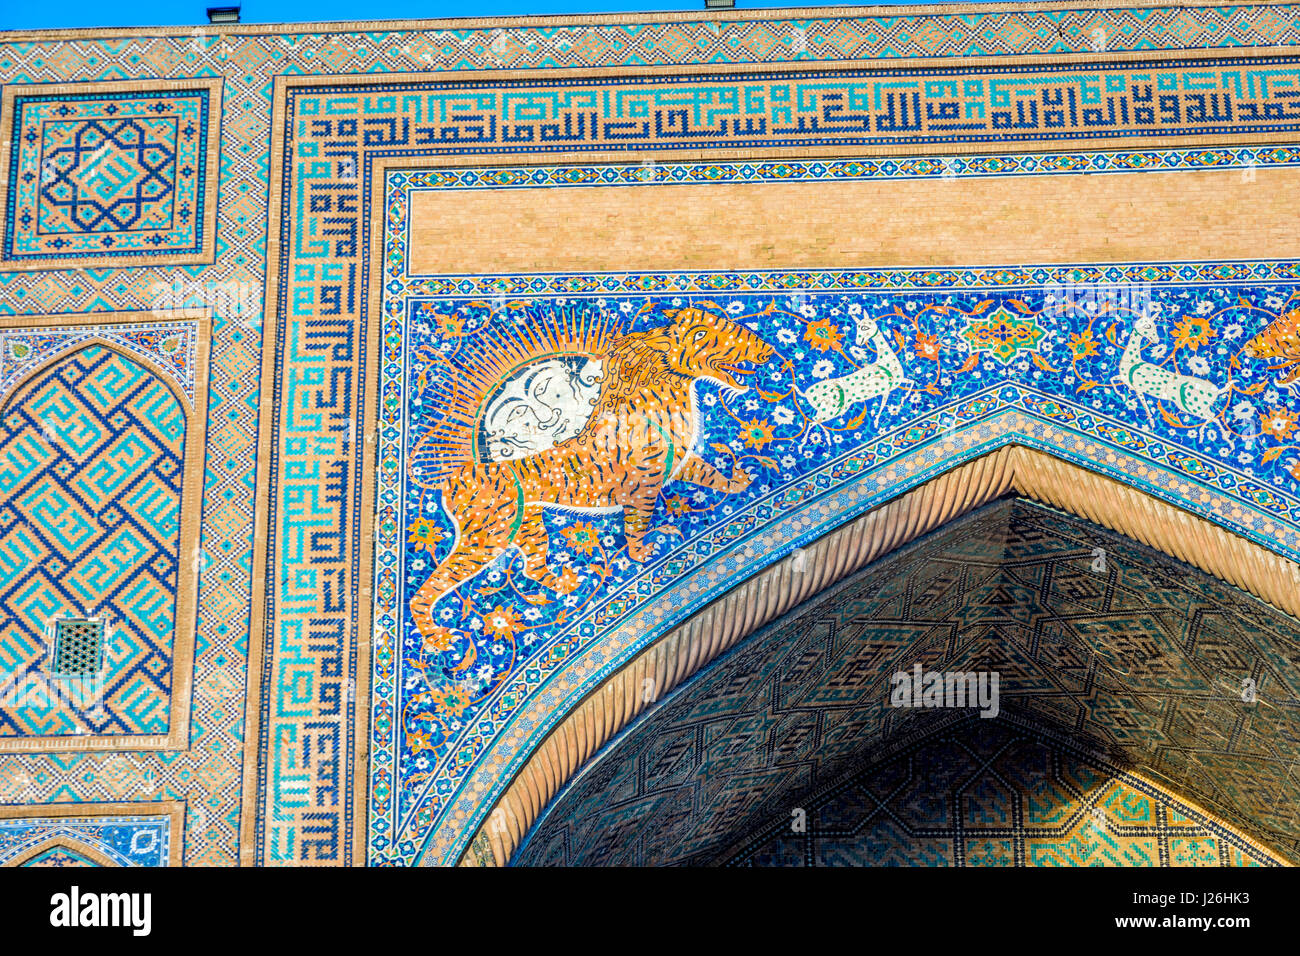 Mosaik Detail mit Tiger, menschliches Gesicht und Ziege am Sher Dor Medresen, Samarkand, Usbekistan Stockfoto